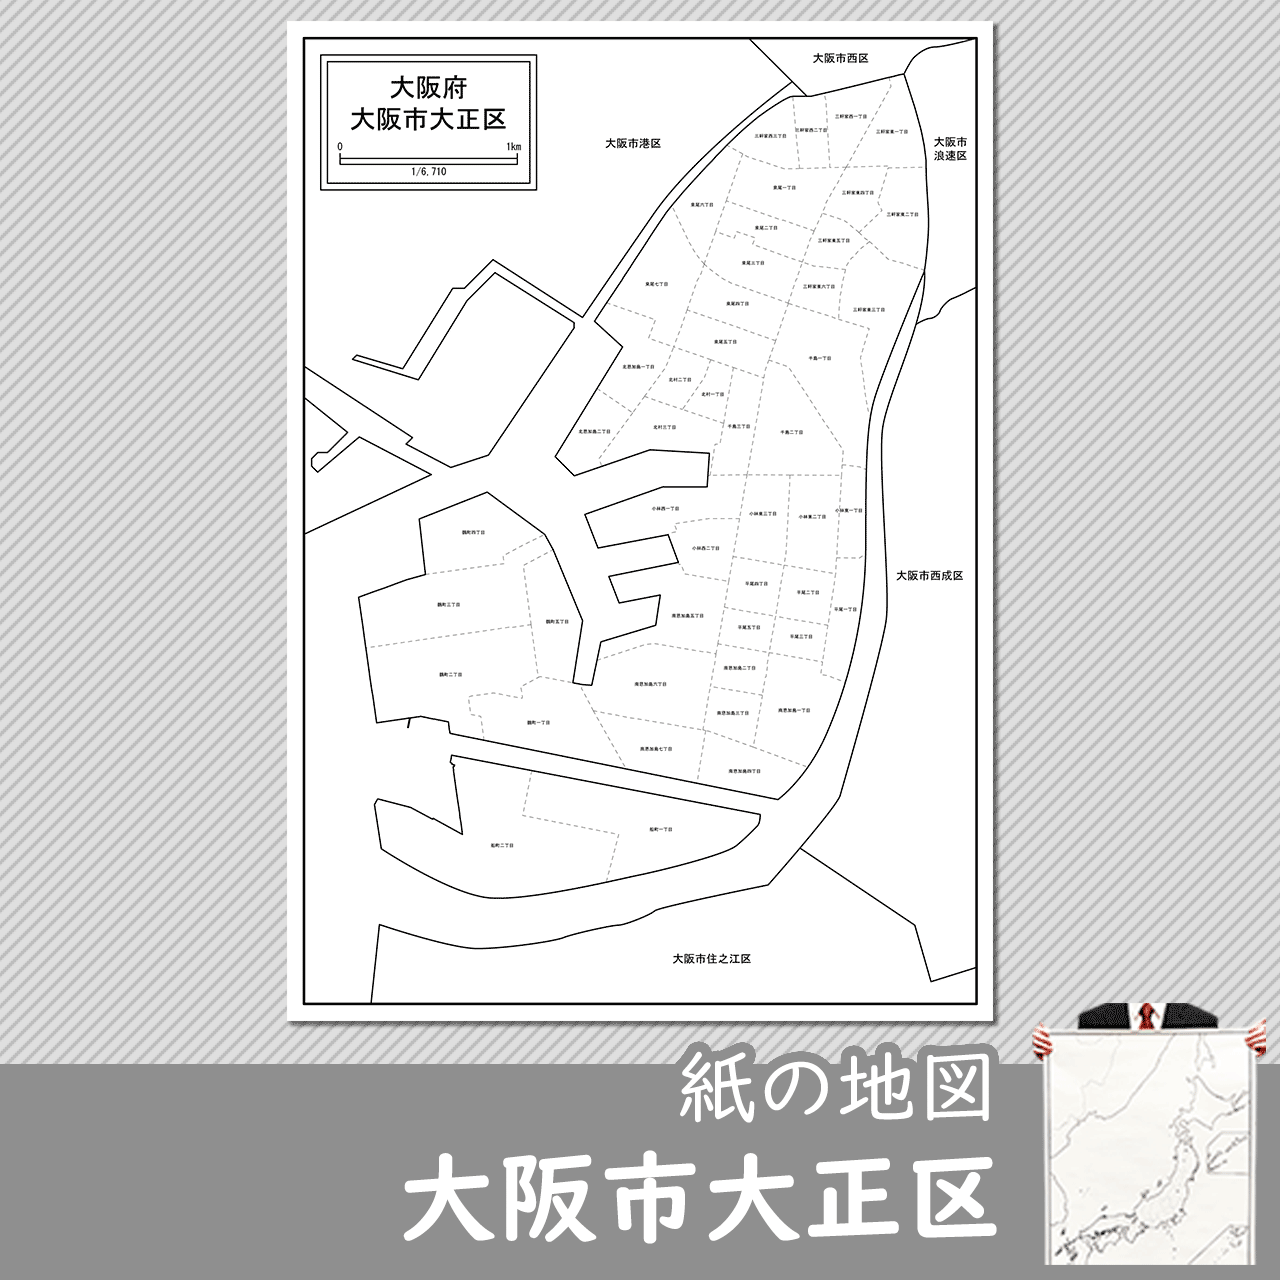 大阪市大正区の紙の白地図のサムネイル